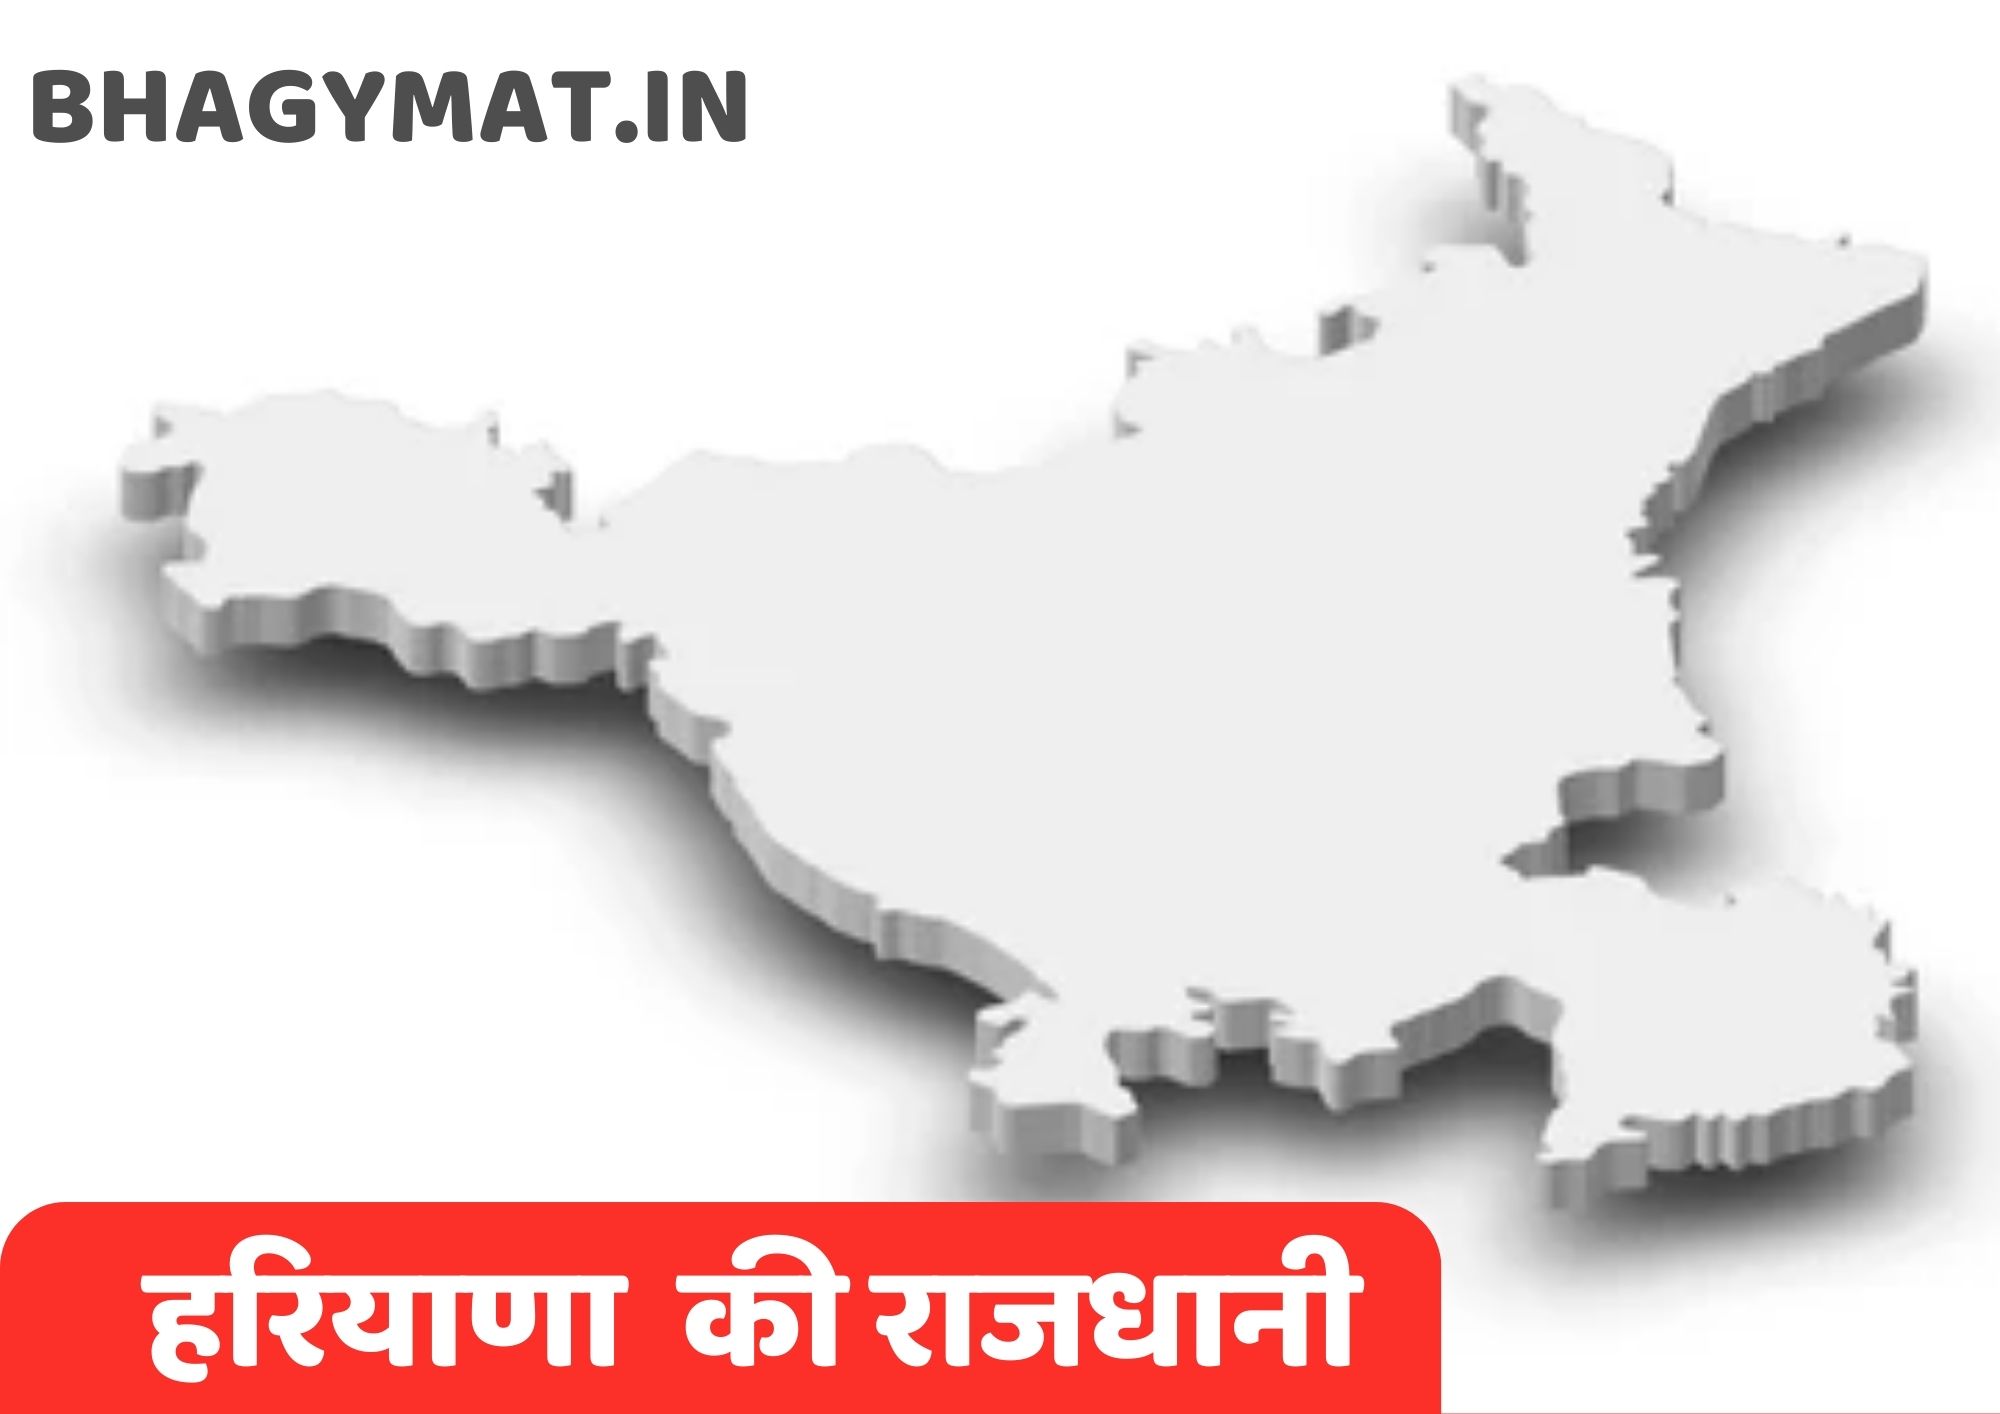 हरियाणा की राजधानी कहां है (हरियाणा की राजधानी क्या है) – Haryana Ki Rajdhani Kahan Hai | Haryana Ki Rajdhani Kya Hai